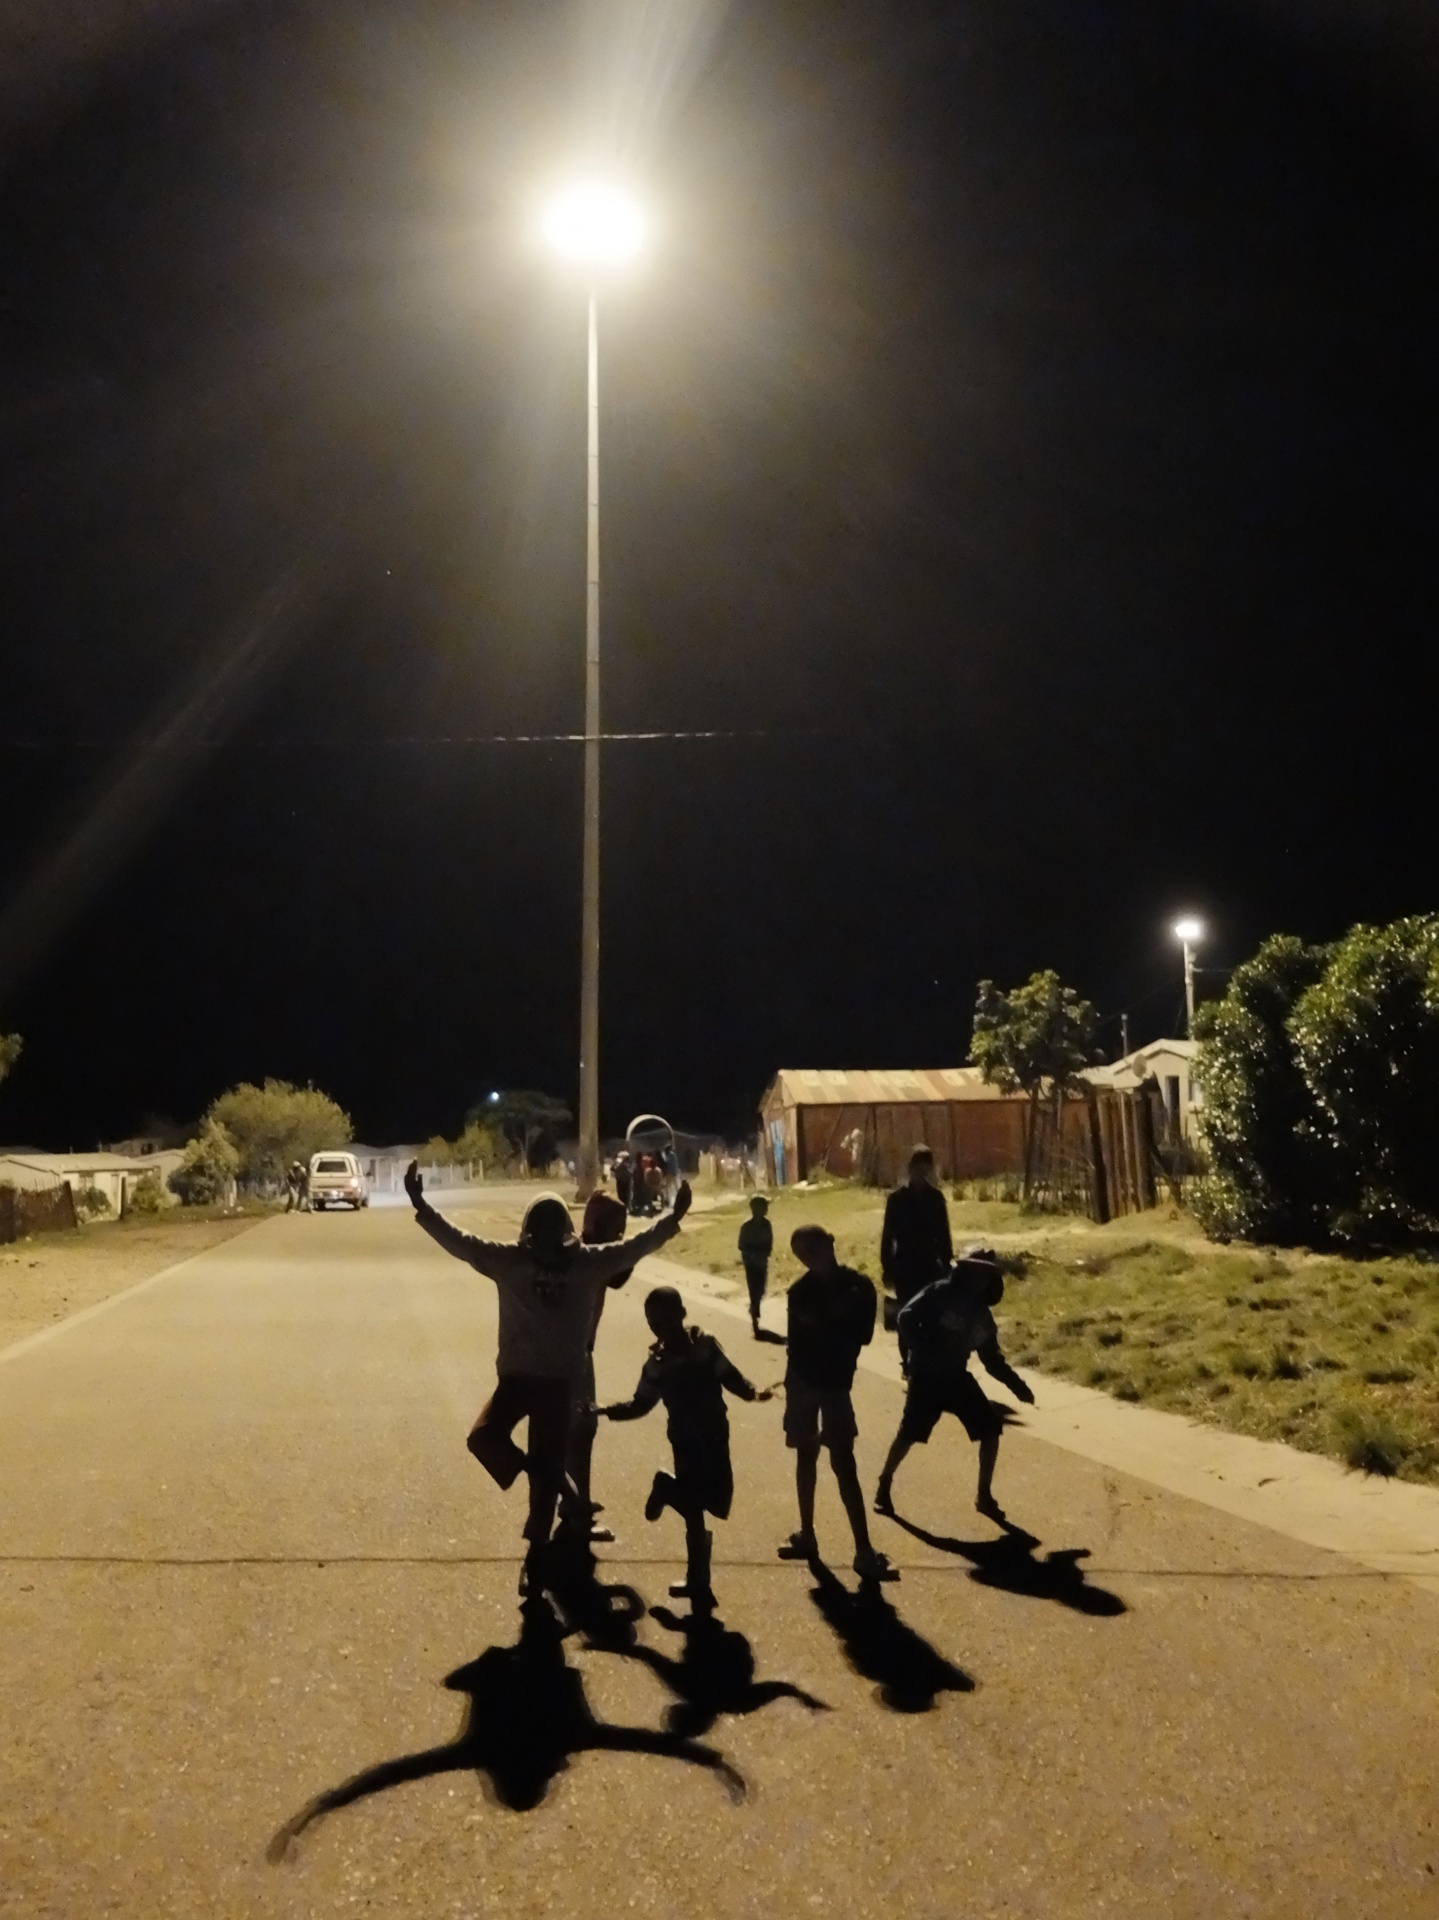 township,children playing,children posing,mast lighting,night scene - free image from needpix.com